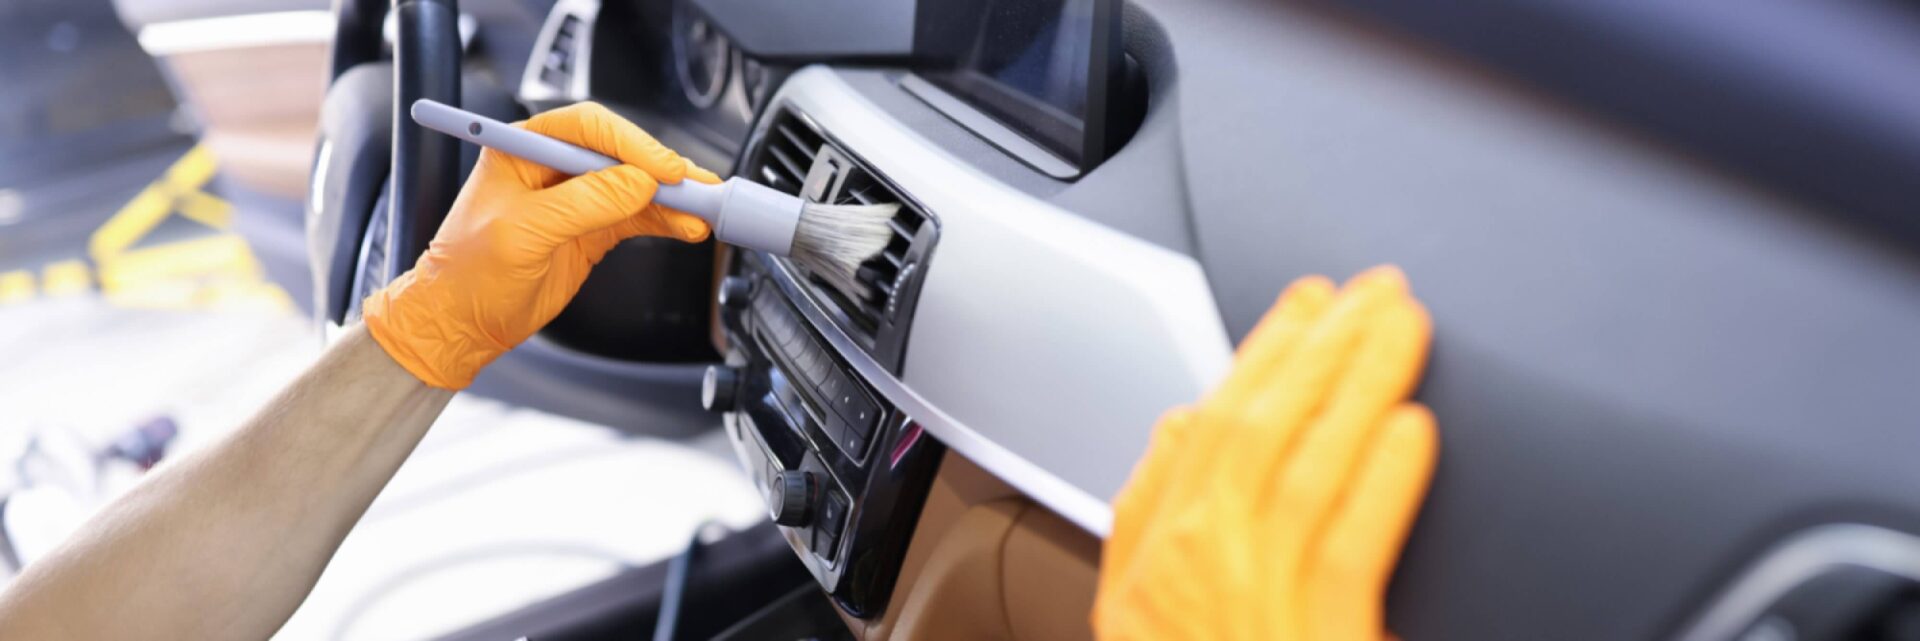 limpeza e mantenção ar condicionado do carro